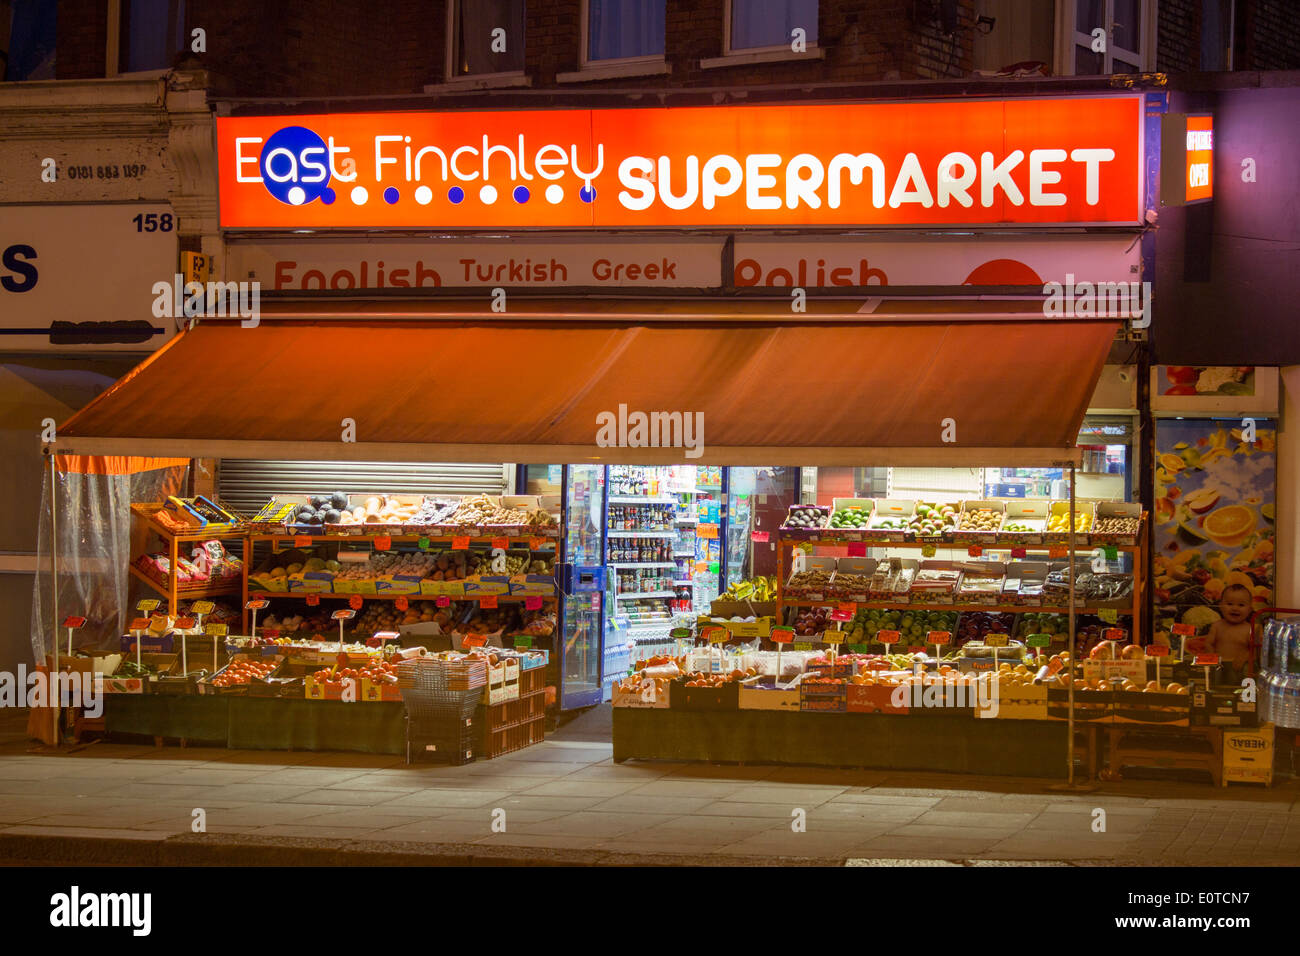 East Finchley supermercato locale negozio ad angolo con frutta e verdura al di fuori di visualizzazione High Road East Finchley North London Inghilterra England Regno Unito Foto Stock